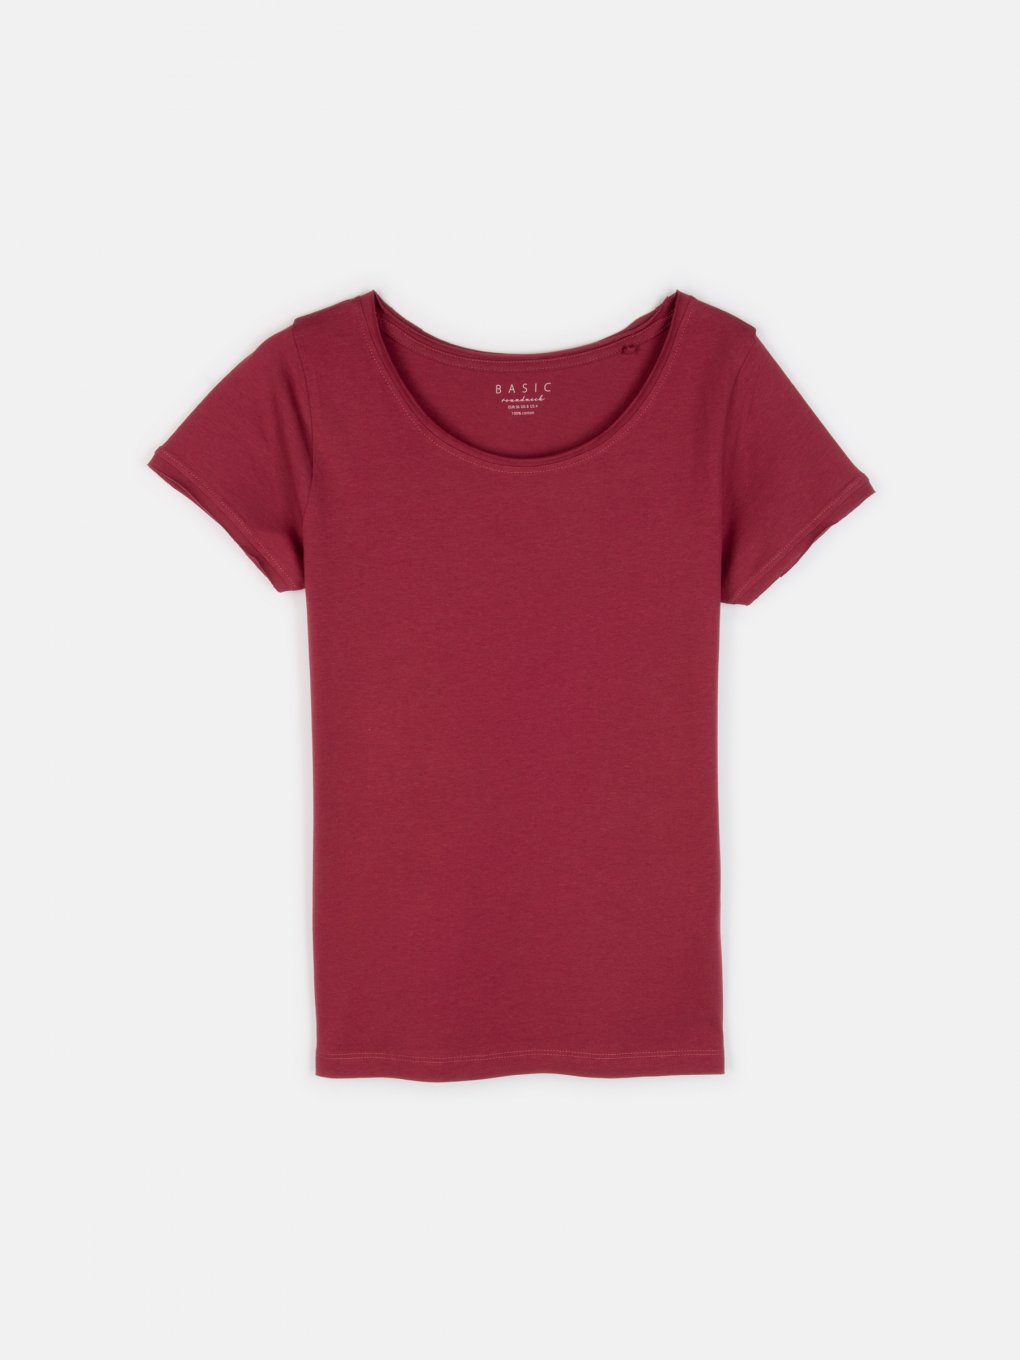 Základné bavlnené basic tričko s neopracovaným lemom dámske